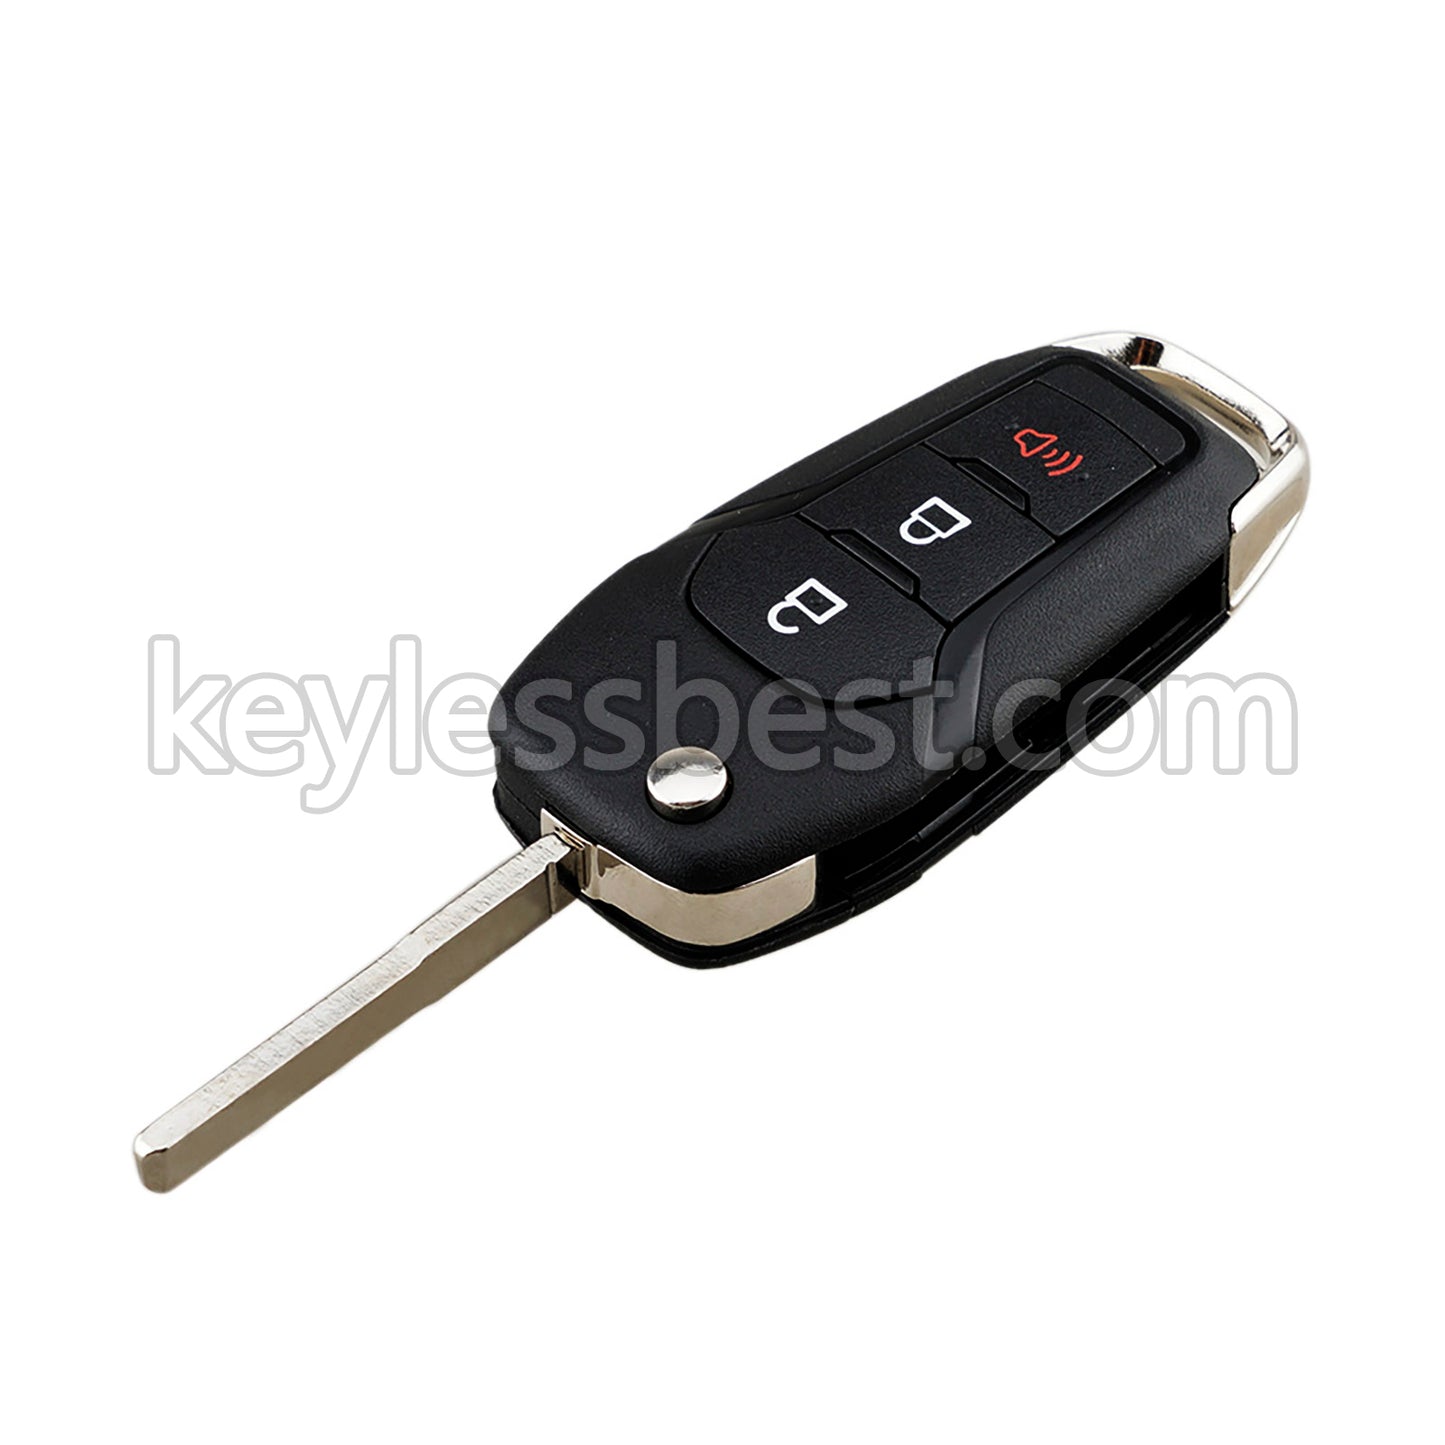 2011-2019 Ford / Smart Key Emergency Key / PN: 164-R8055